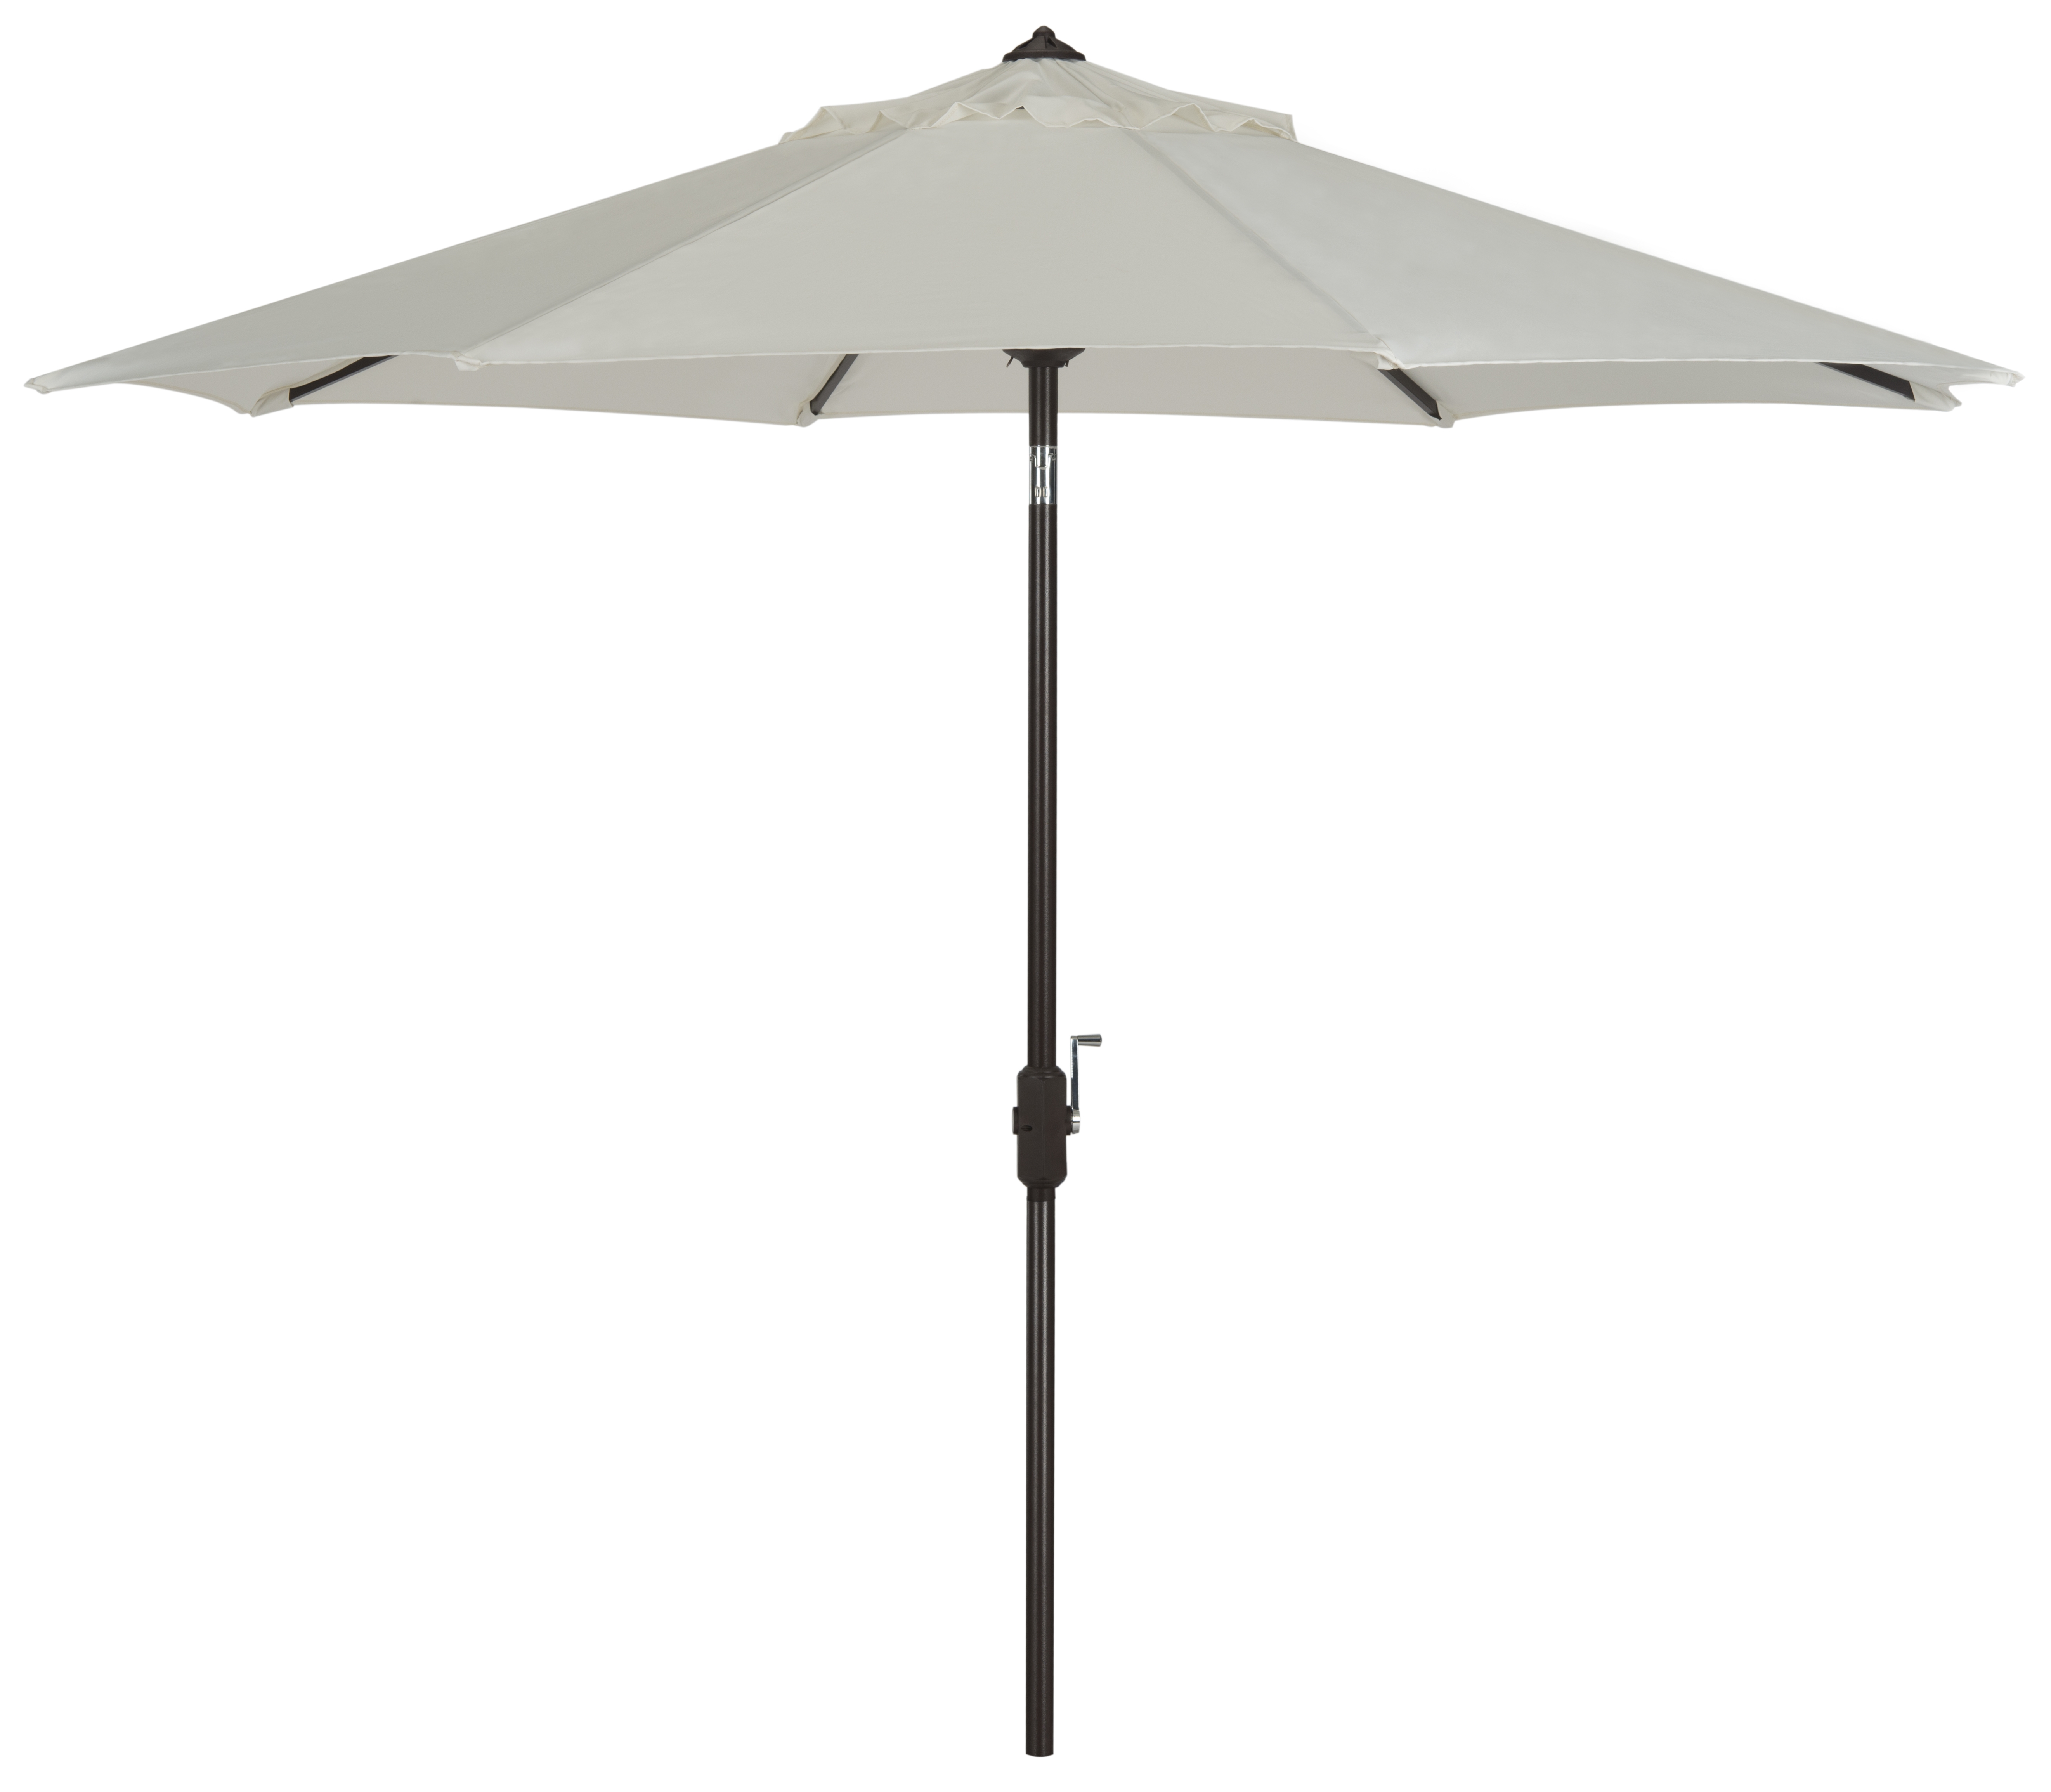 Uv Resistant Ortega 9 Ft Auto Tilt Crank Umbrella - Natural - Arlo Home - Image 0